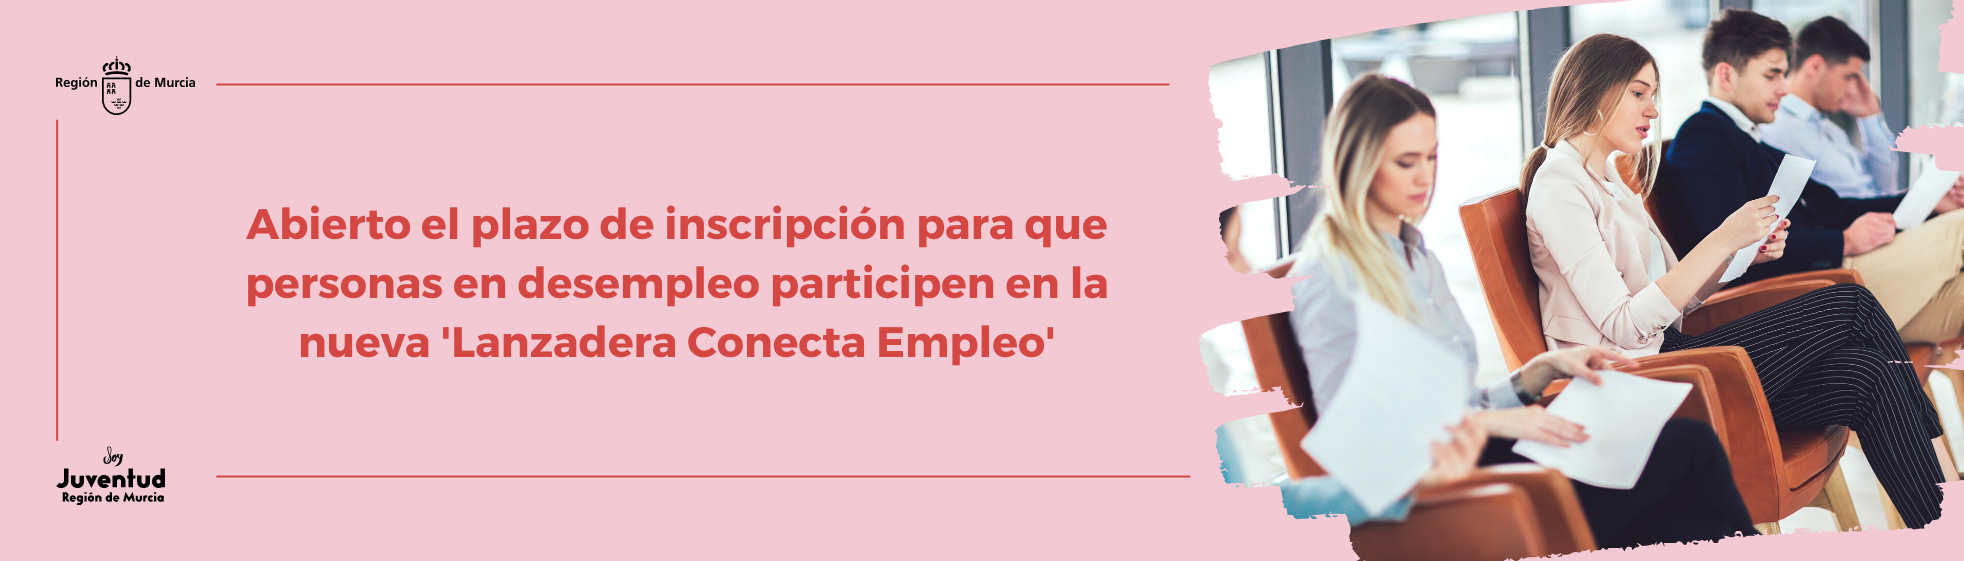 Abierto el plazo de inscripción para que personas en desempleo participen en la nueva 'Lanzadera Conecta Empleo' de Murcia